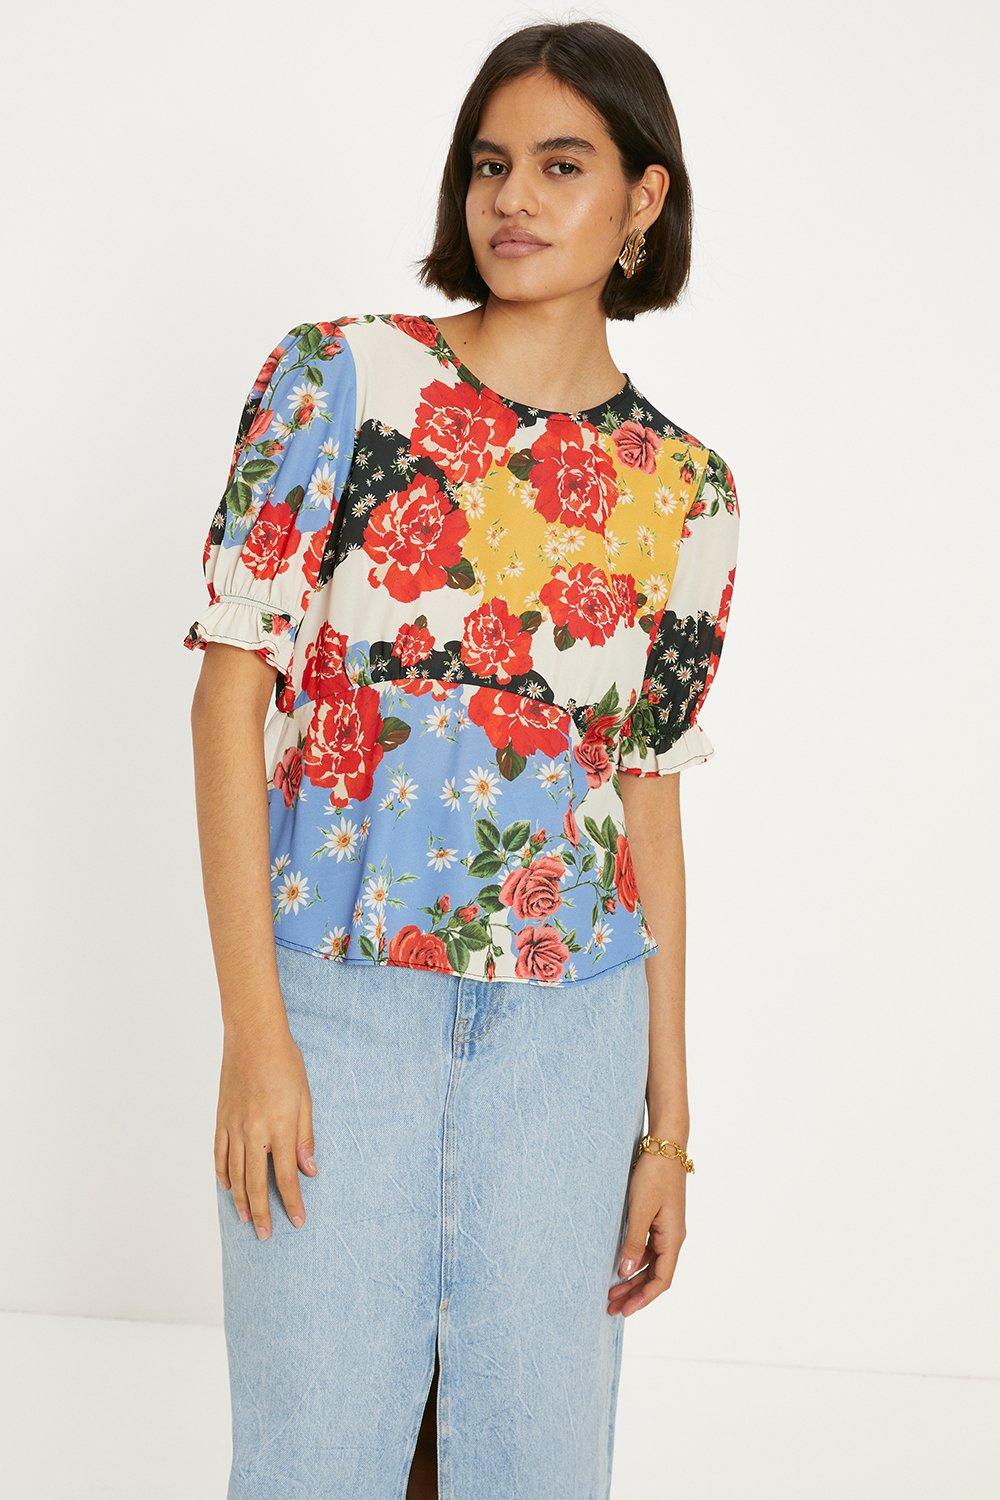 Чайная блузка с короткими рукавами и цветочным принтом Oasis, мультиколор блузка zolla с цветочным принтом 40 размер